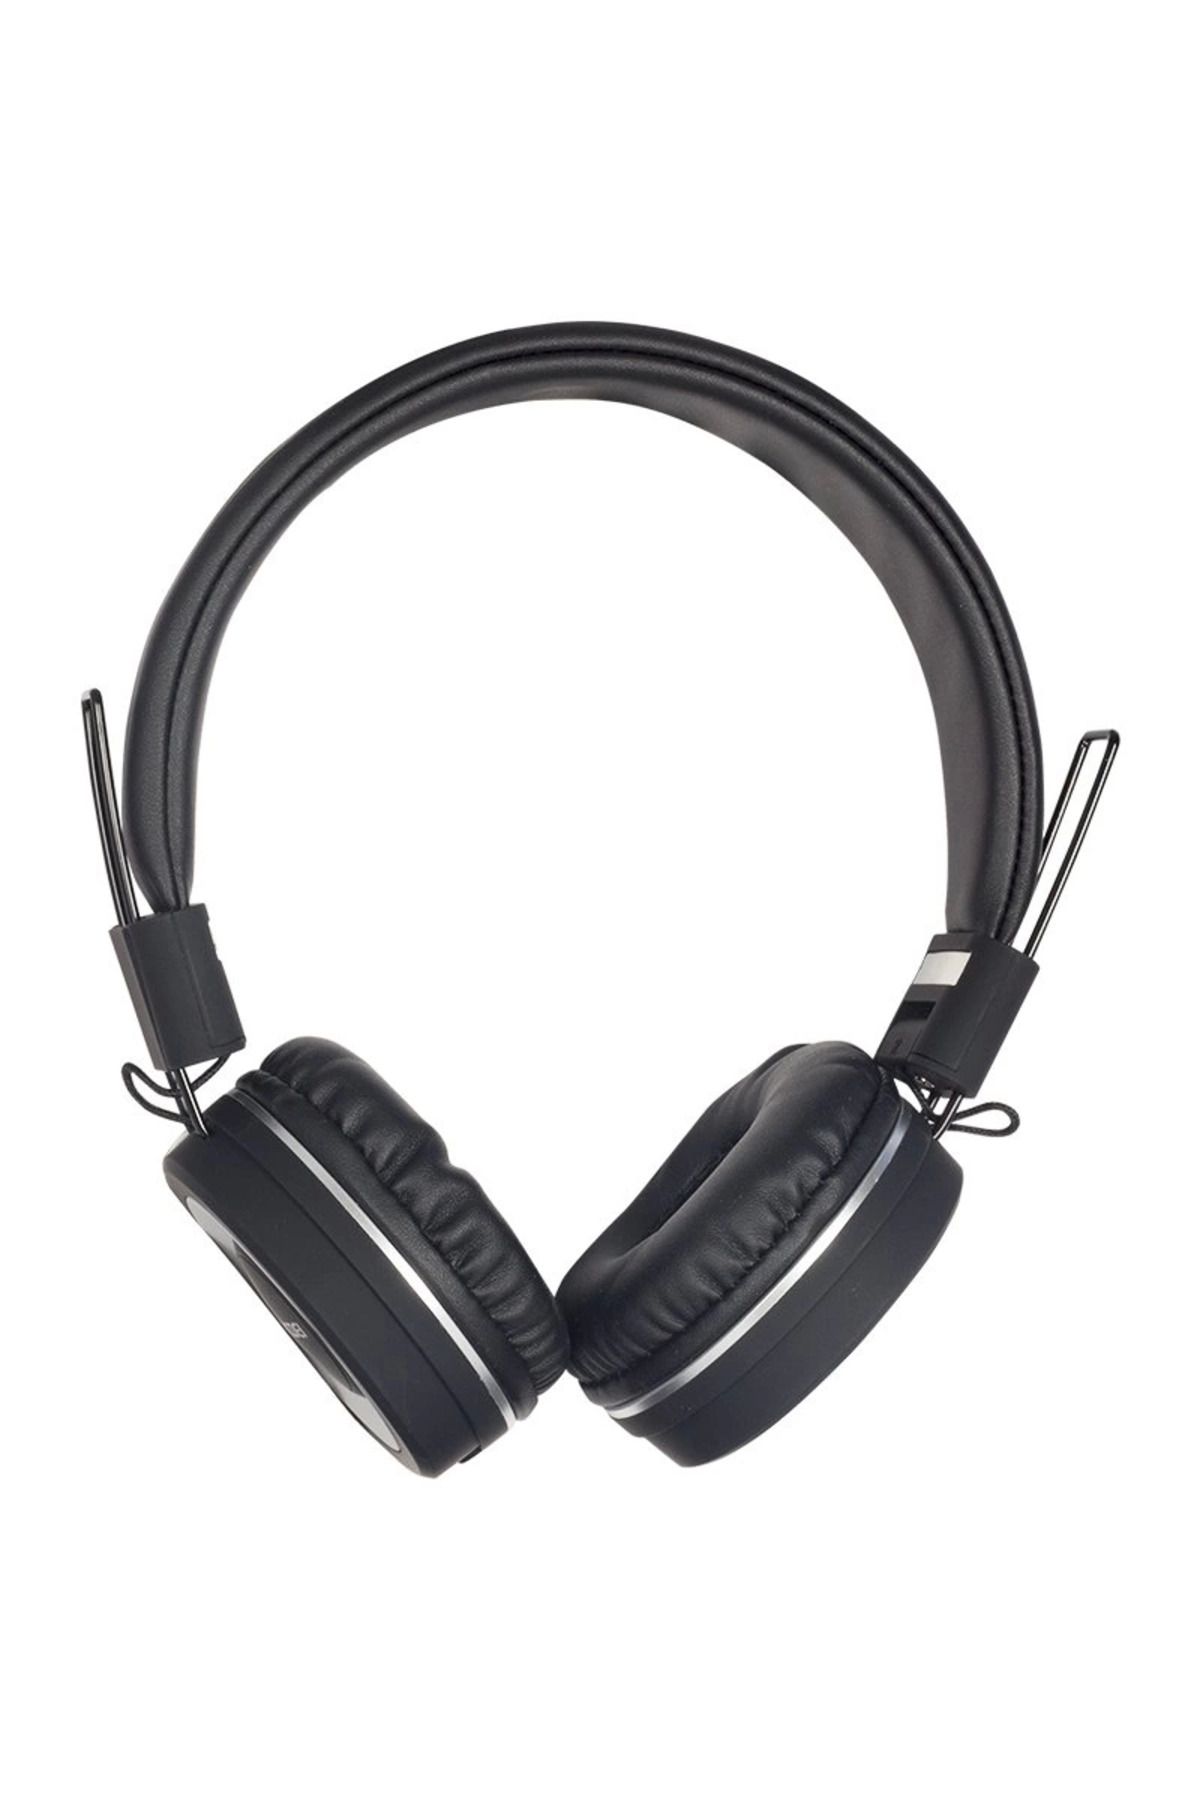 Epilons Magıcvoıce Ev-20 3.5mm Jacklı Kablolu Kulak Üstü Tasarım Kulaklık